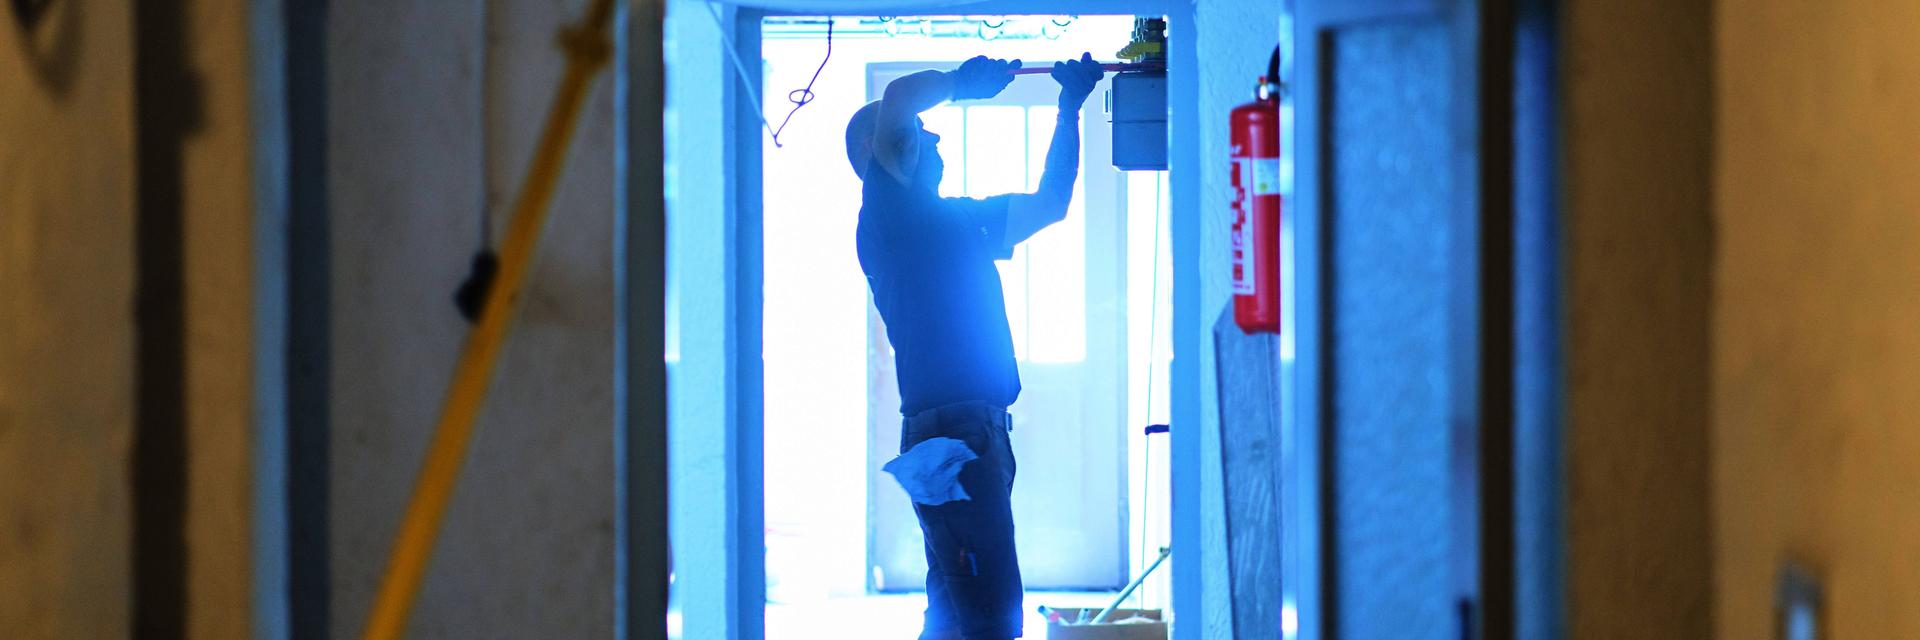 Ein Handwerker schraubt an einer Baustelle etwas in die Wand
Handwerker und Fachkräftemangel in Deutschland am 21.07.2022 Baustelle am June 23, 2021 in München, Germany.